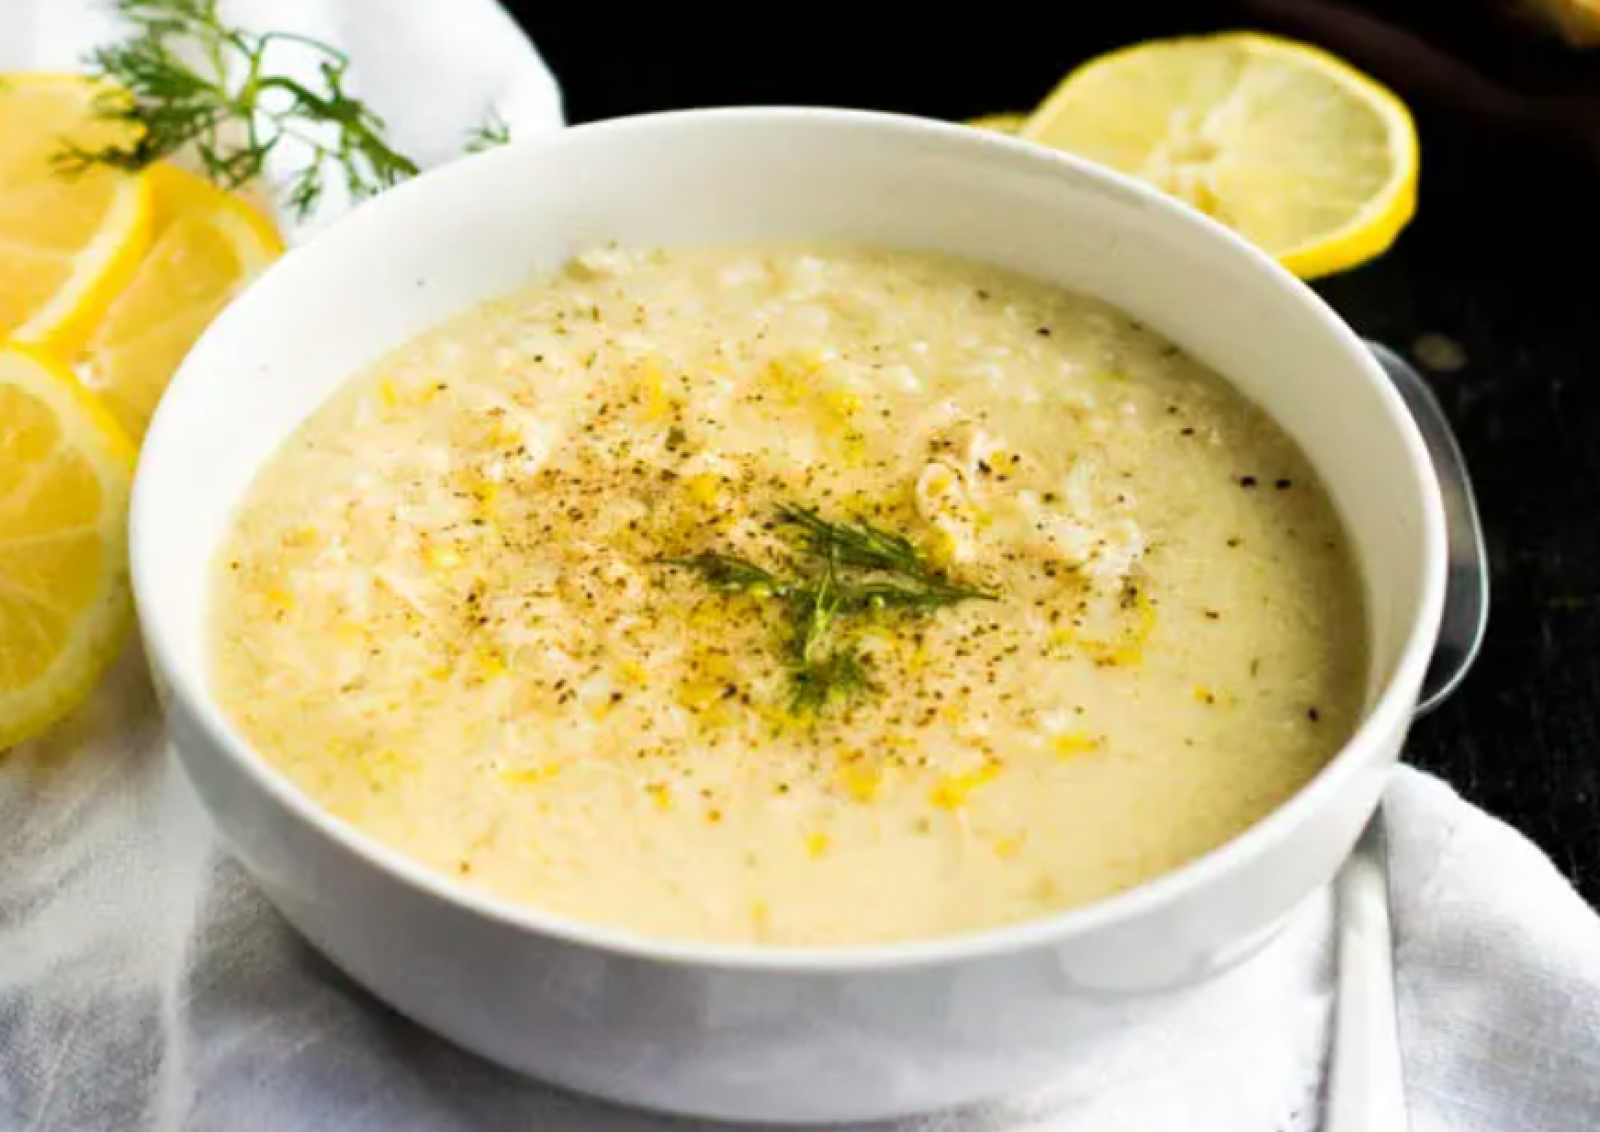 Ελληνική χοιρινή σούπα.  Ένα πιάτο πολύ μυρωδάτο και εύκολο στην παρασκευή του